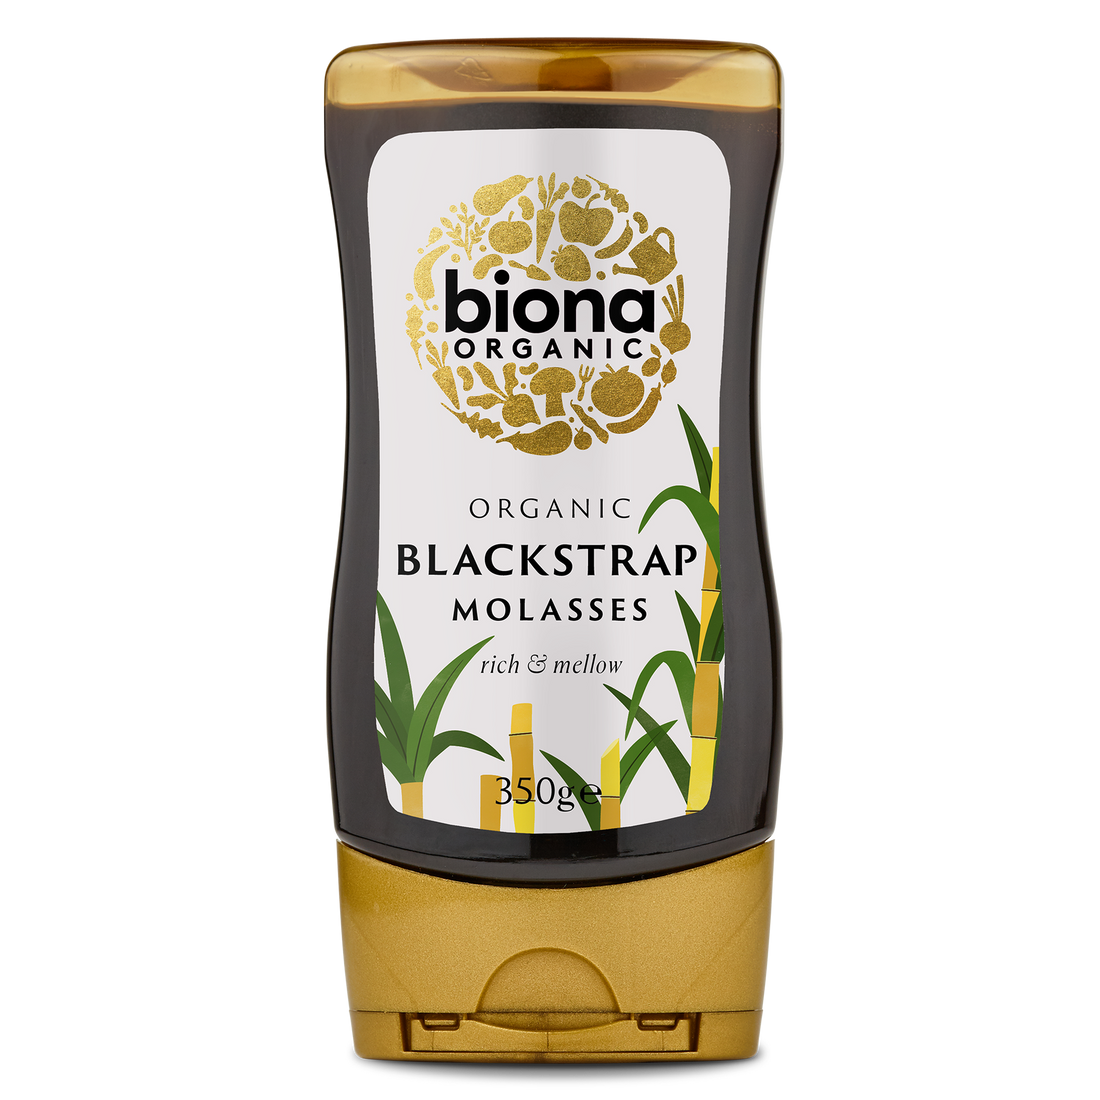 Biona Blackstrap Molasses - 350G